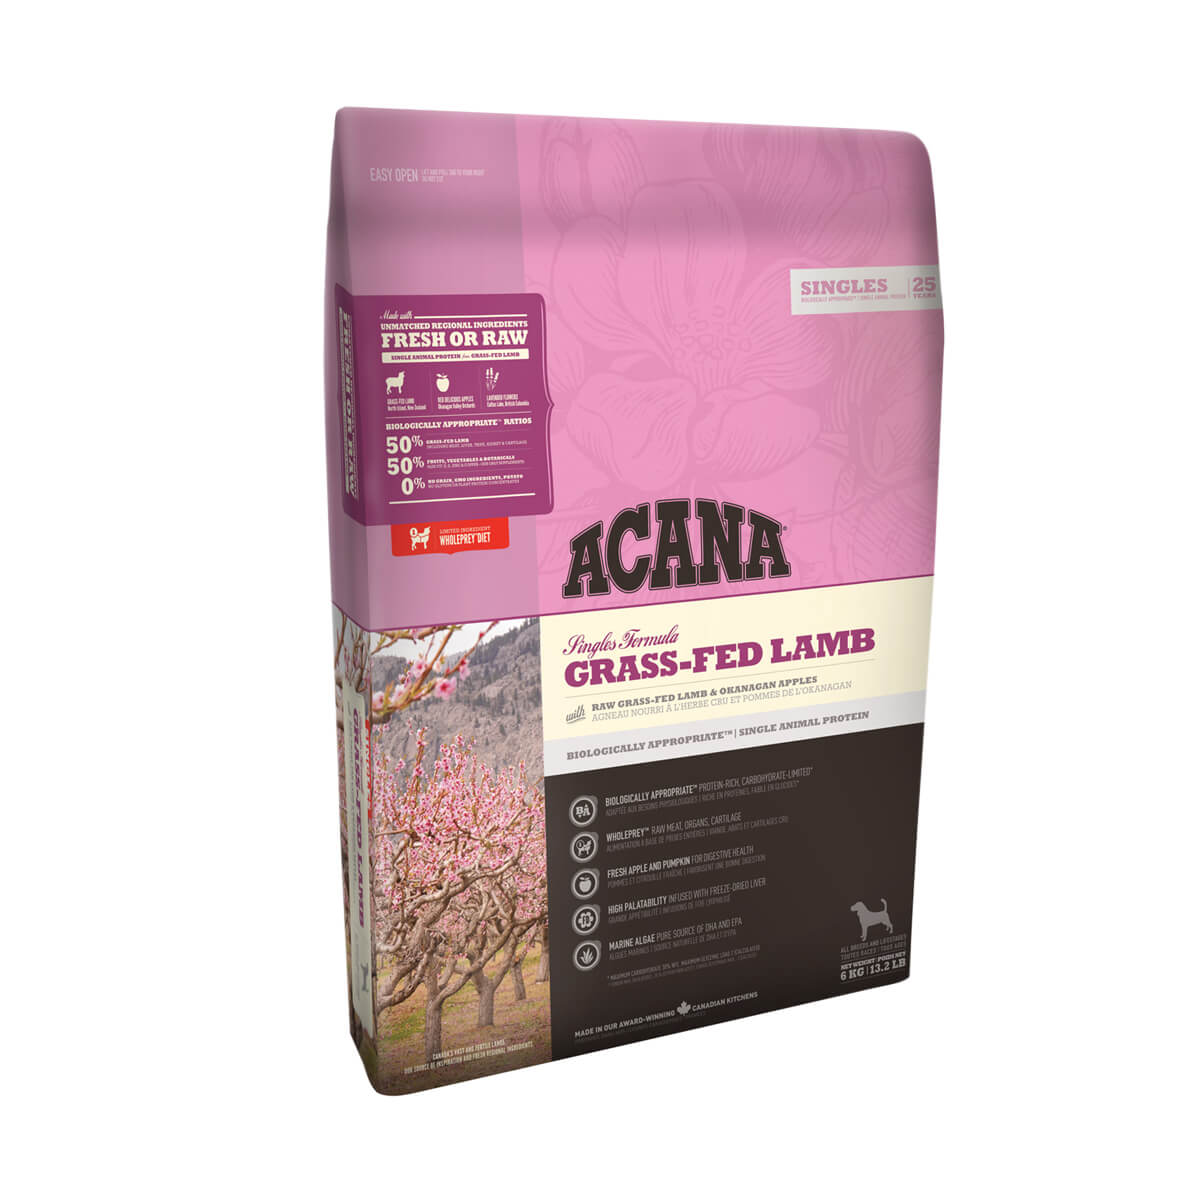 Acana Grass-Fed Lamb - 11.4 kg